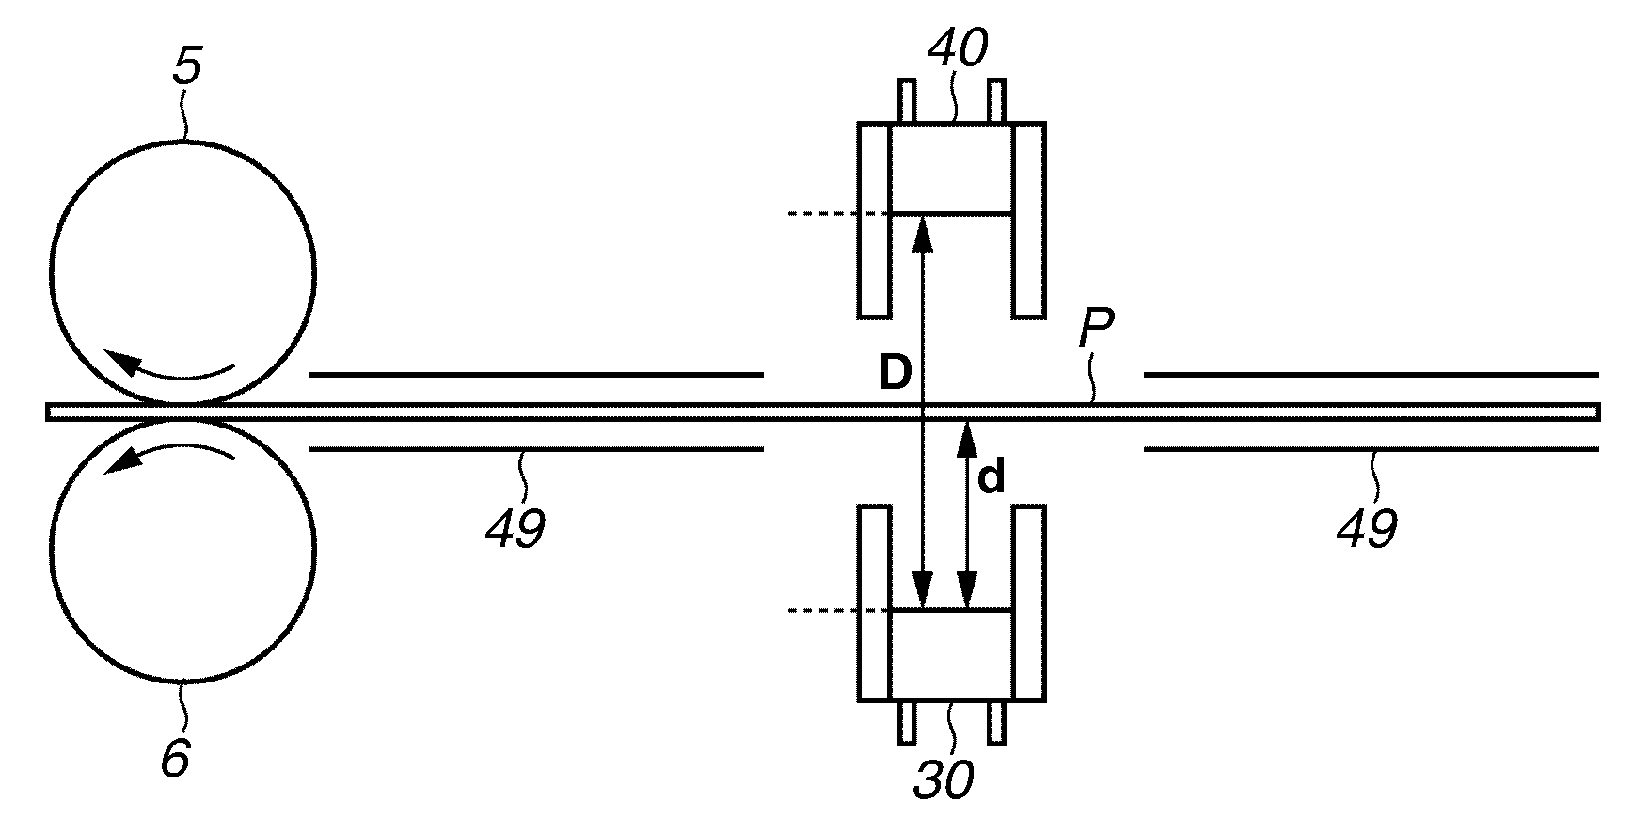 Recording medium determination apparatus and image forming apparatus